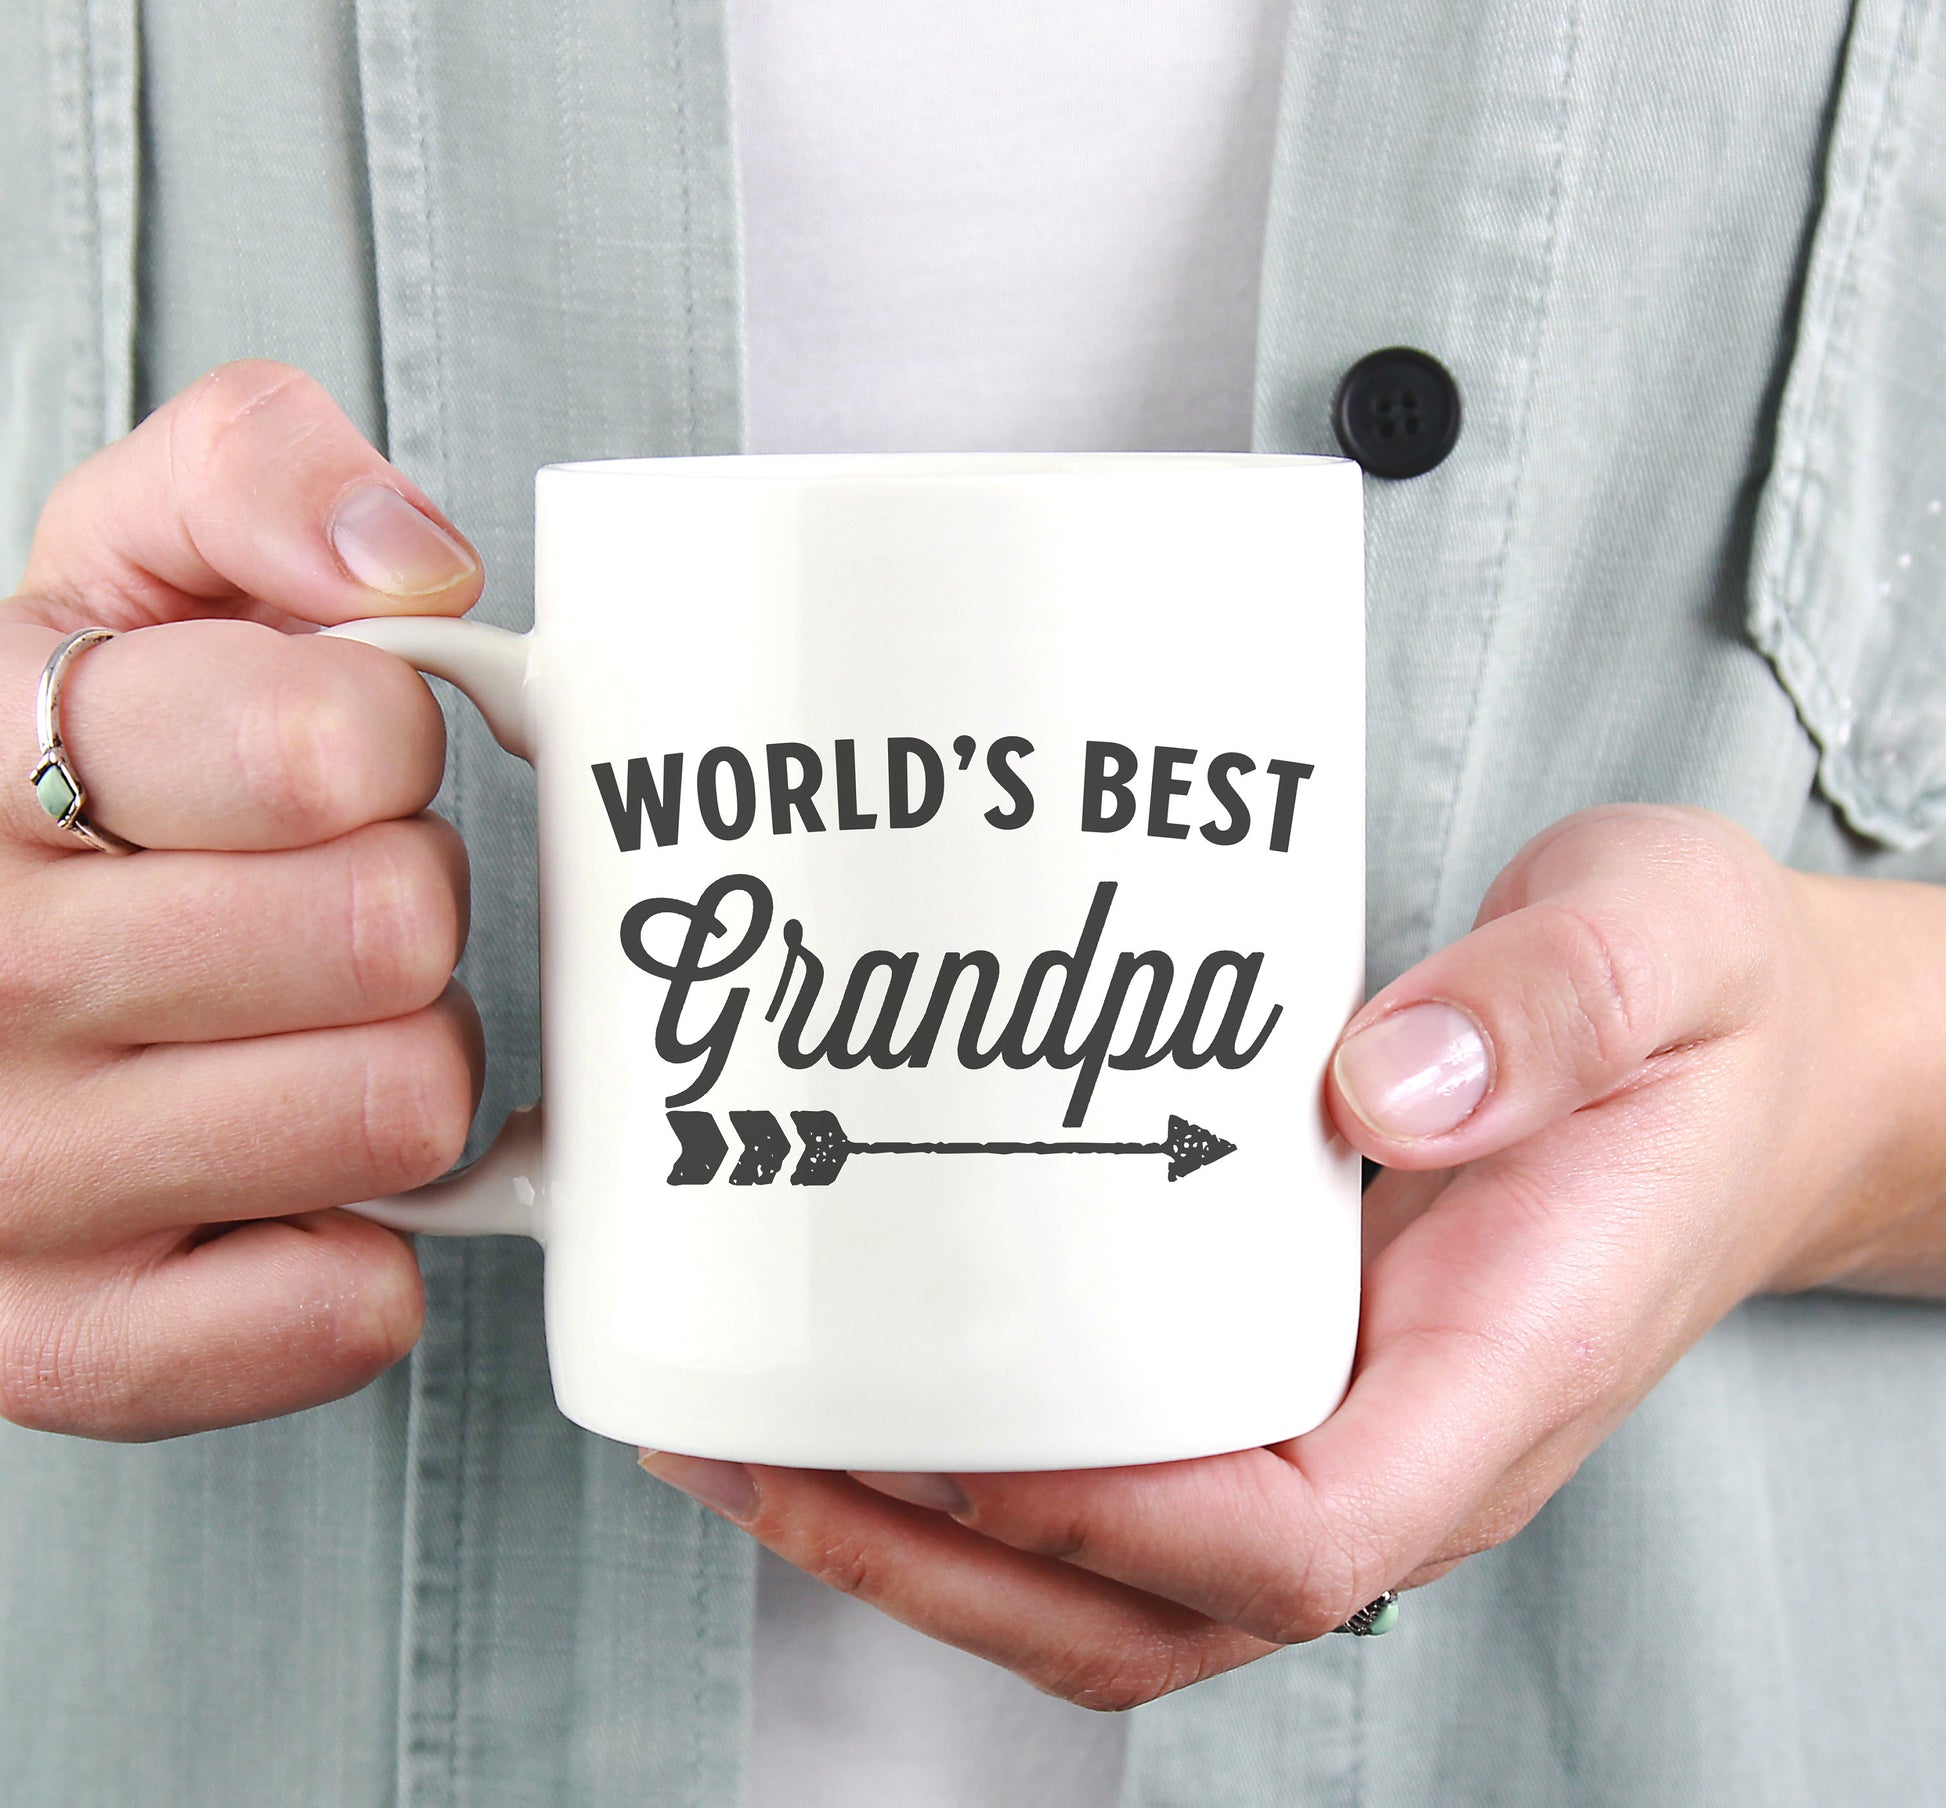 World's Greatest Grandpa Mug